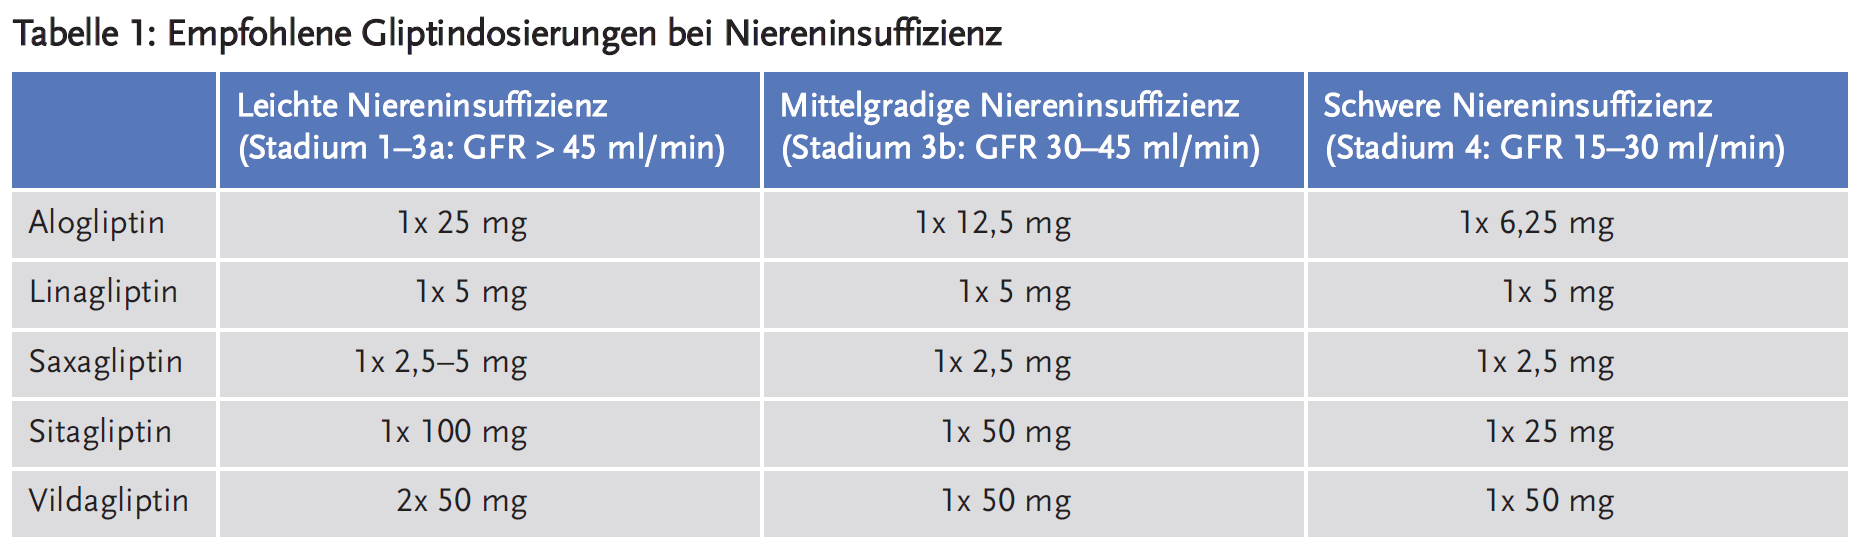 Tabelle 1: Empfohlene Gliptindosierungen bei Niereninsuffizienz